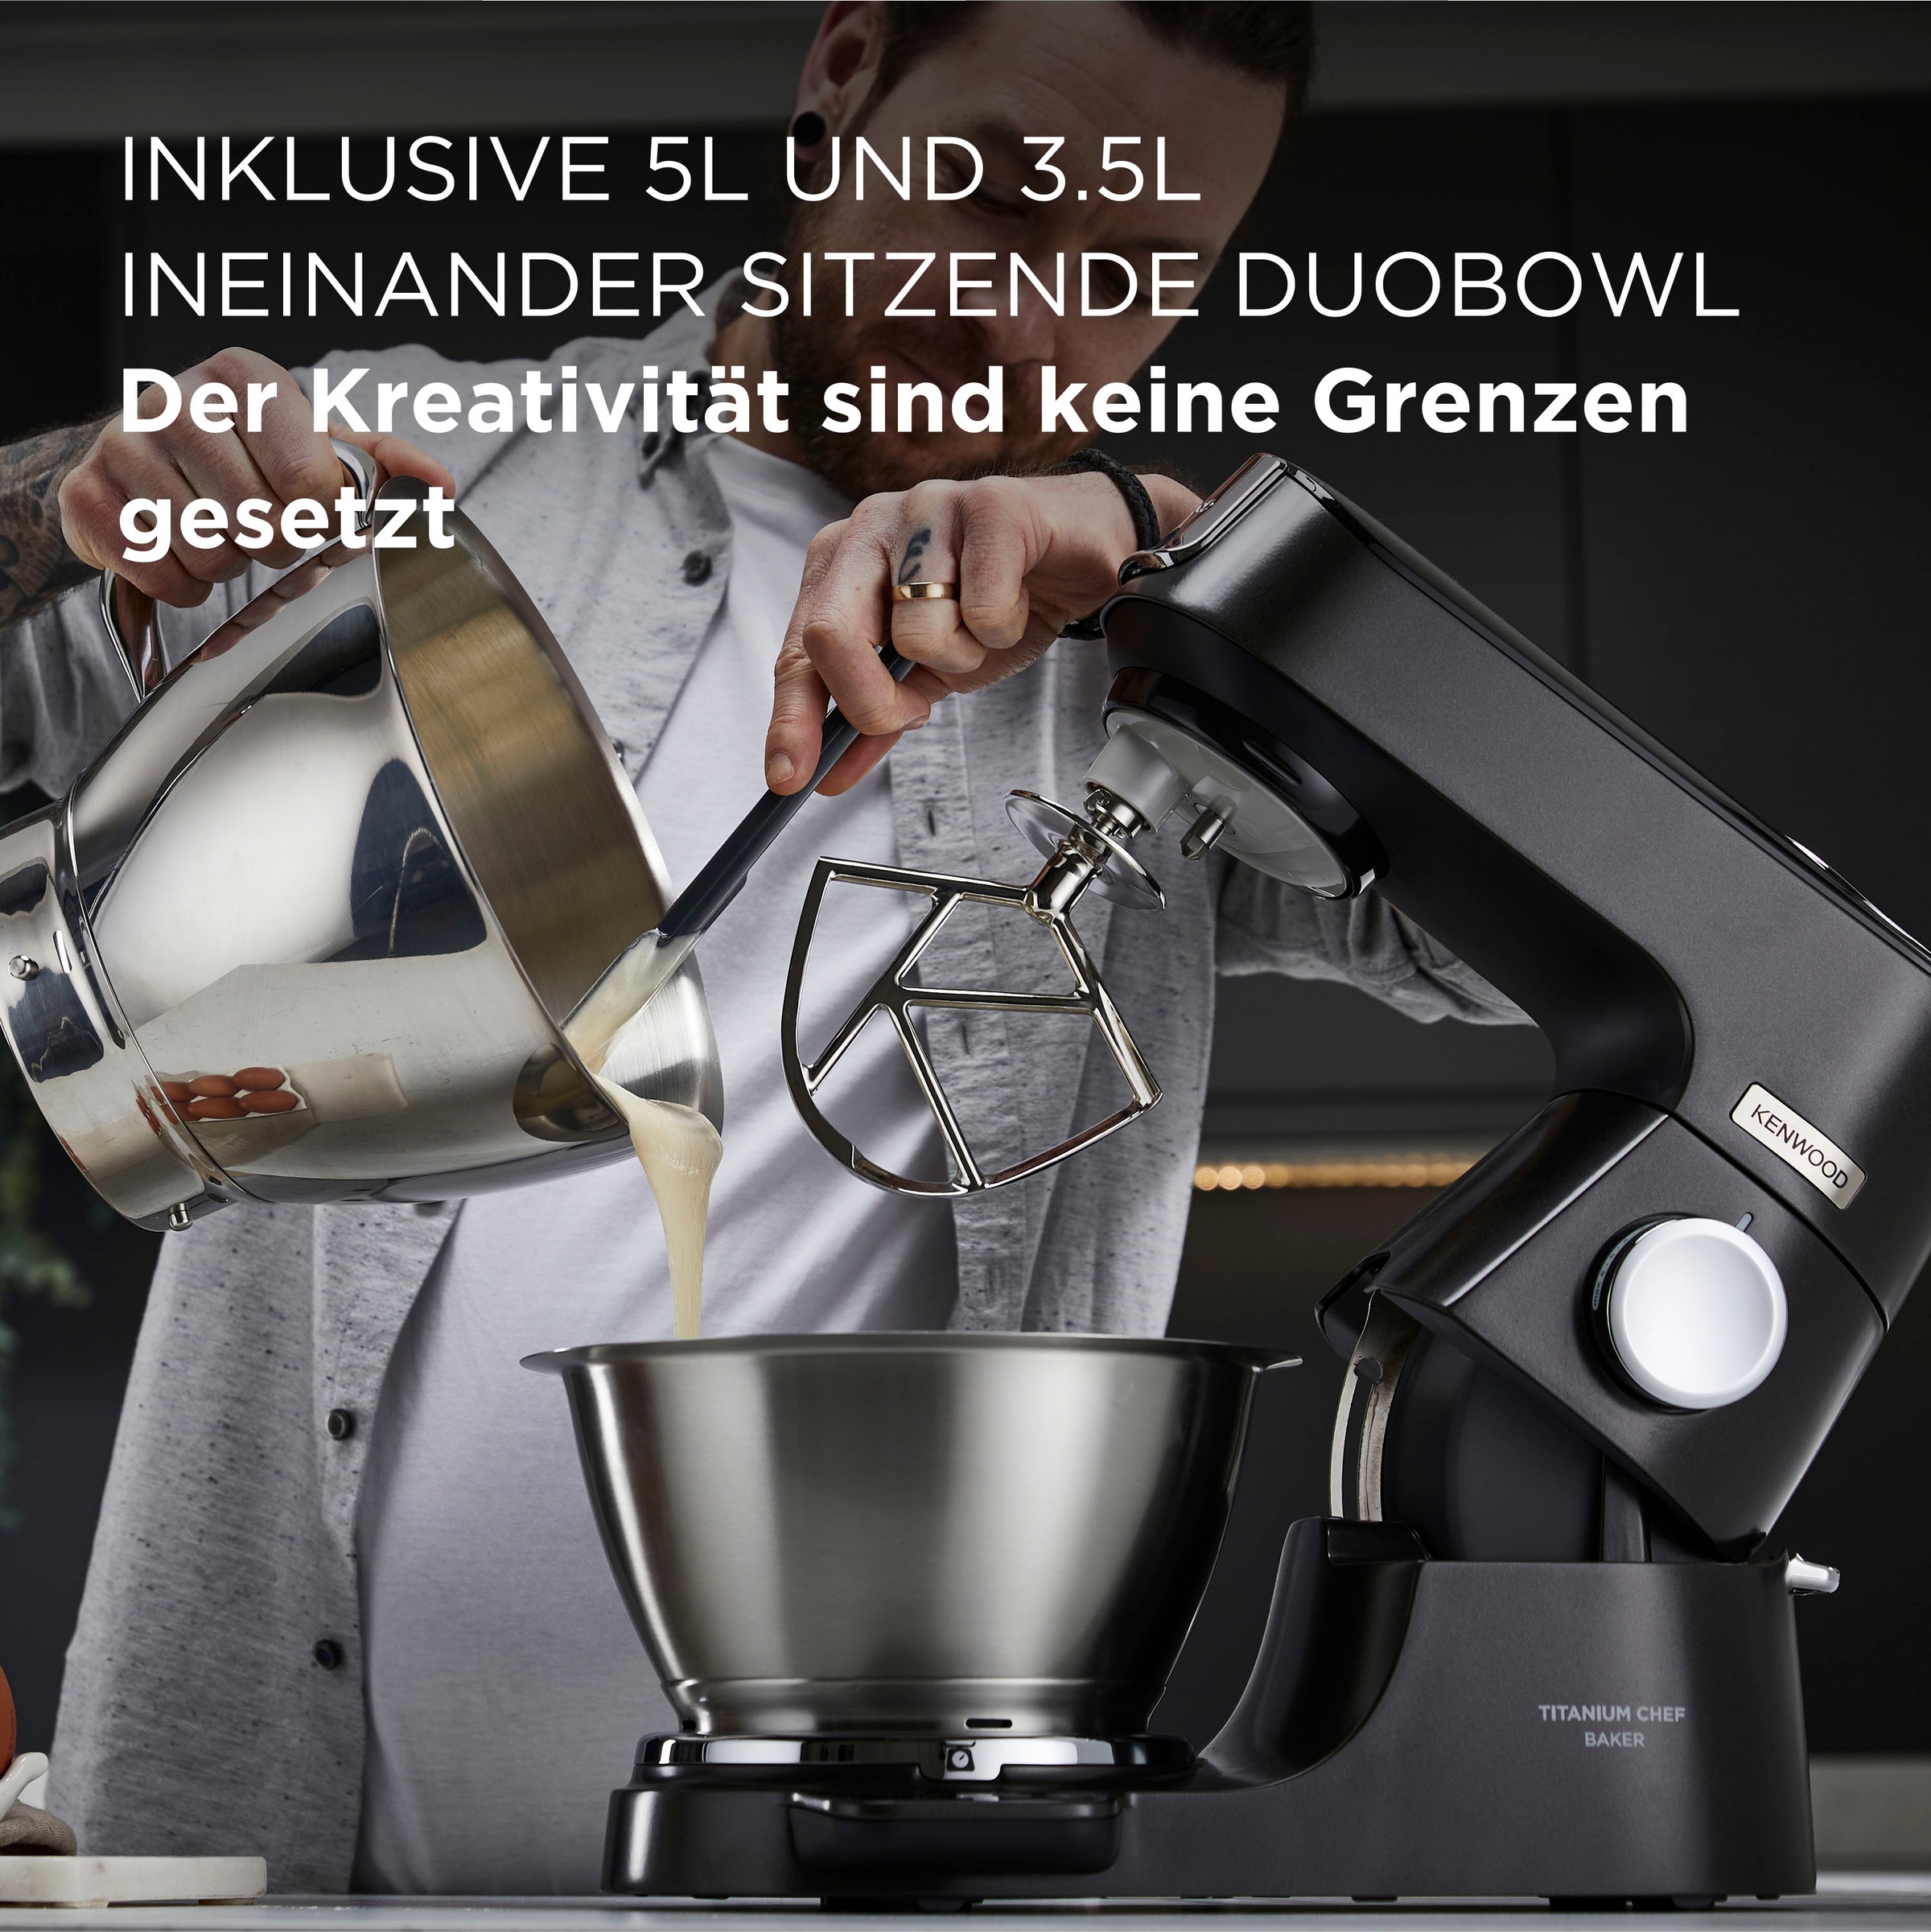 KENWOOD Küchenmaschine »Titanium Schnitzelwerk Gratis Jahren Chef mit Baker UVP Garantie Mixaufsatz 319,- XXL Gratis KVC85.004BK«, 3 Zubehör, Wert: 